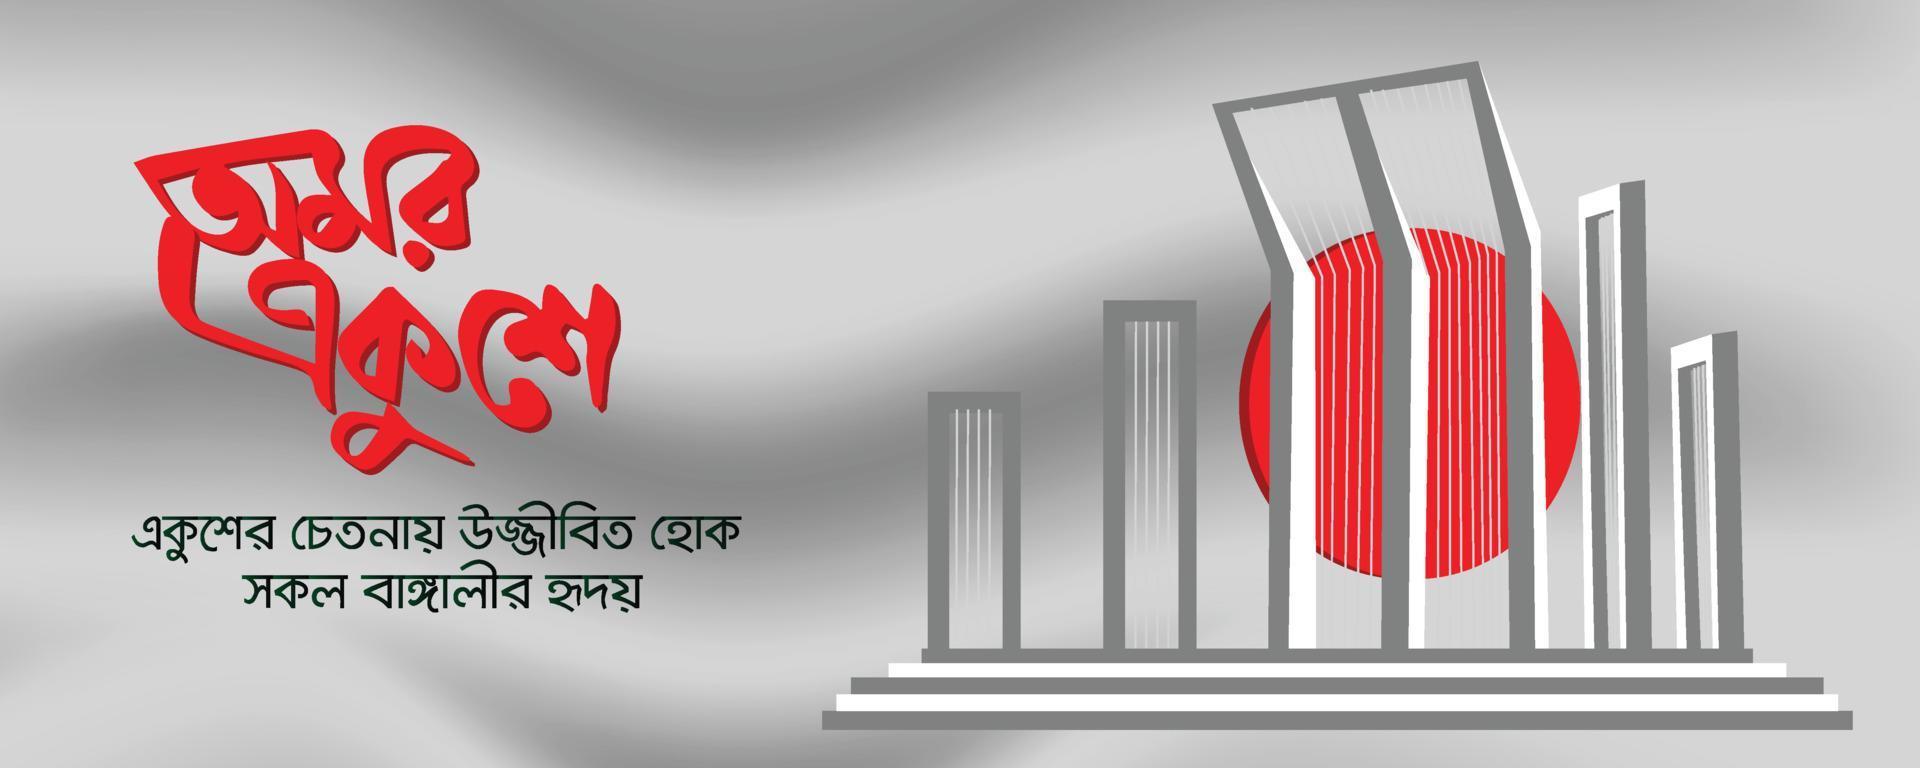 typographie 21 février, journée internationale de la langue maternelle au bangladesh, conception de bannières du 21 février vecteur